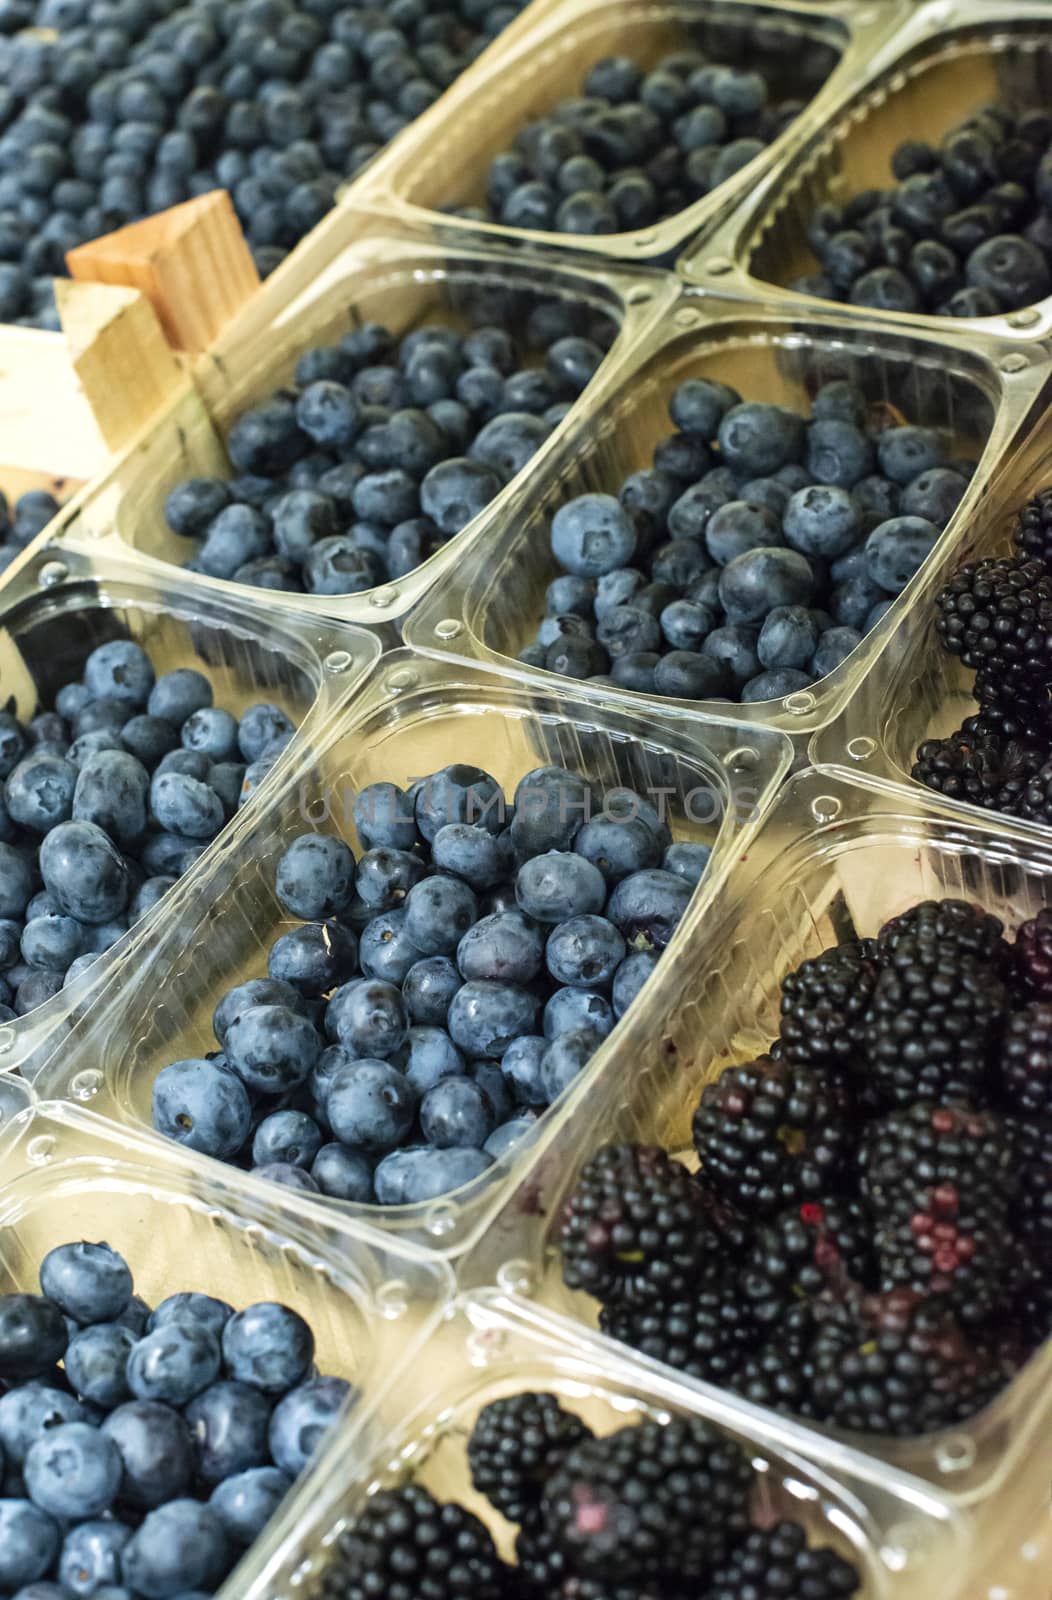 Blueberries on shelf in the market.  by deyan_georgiev